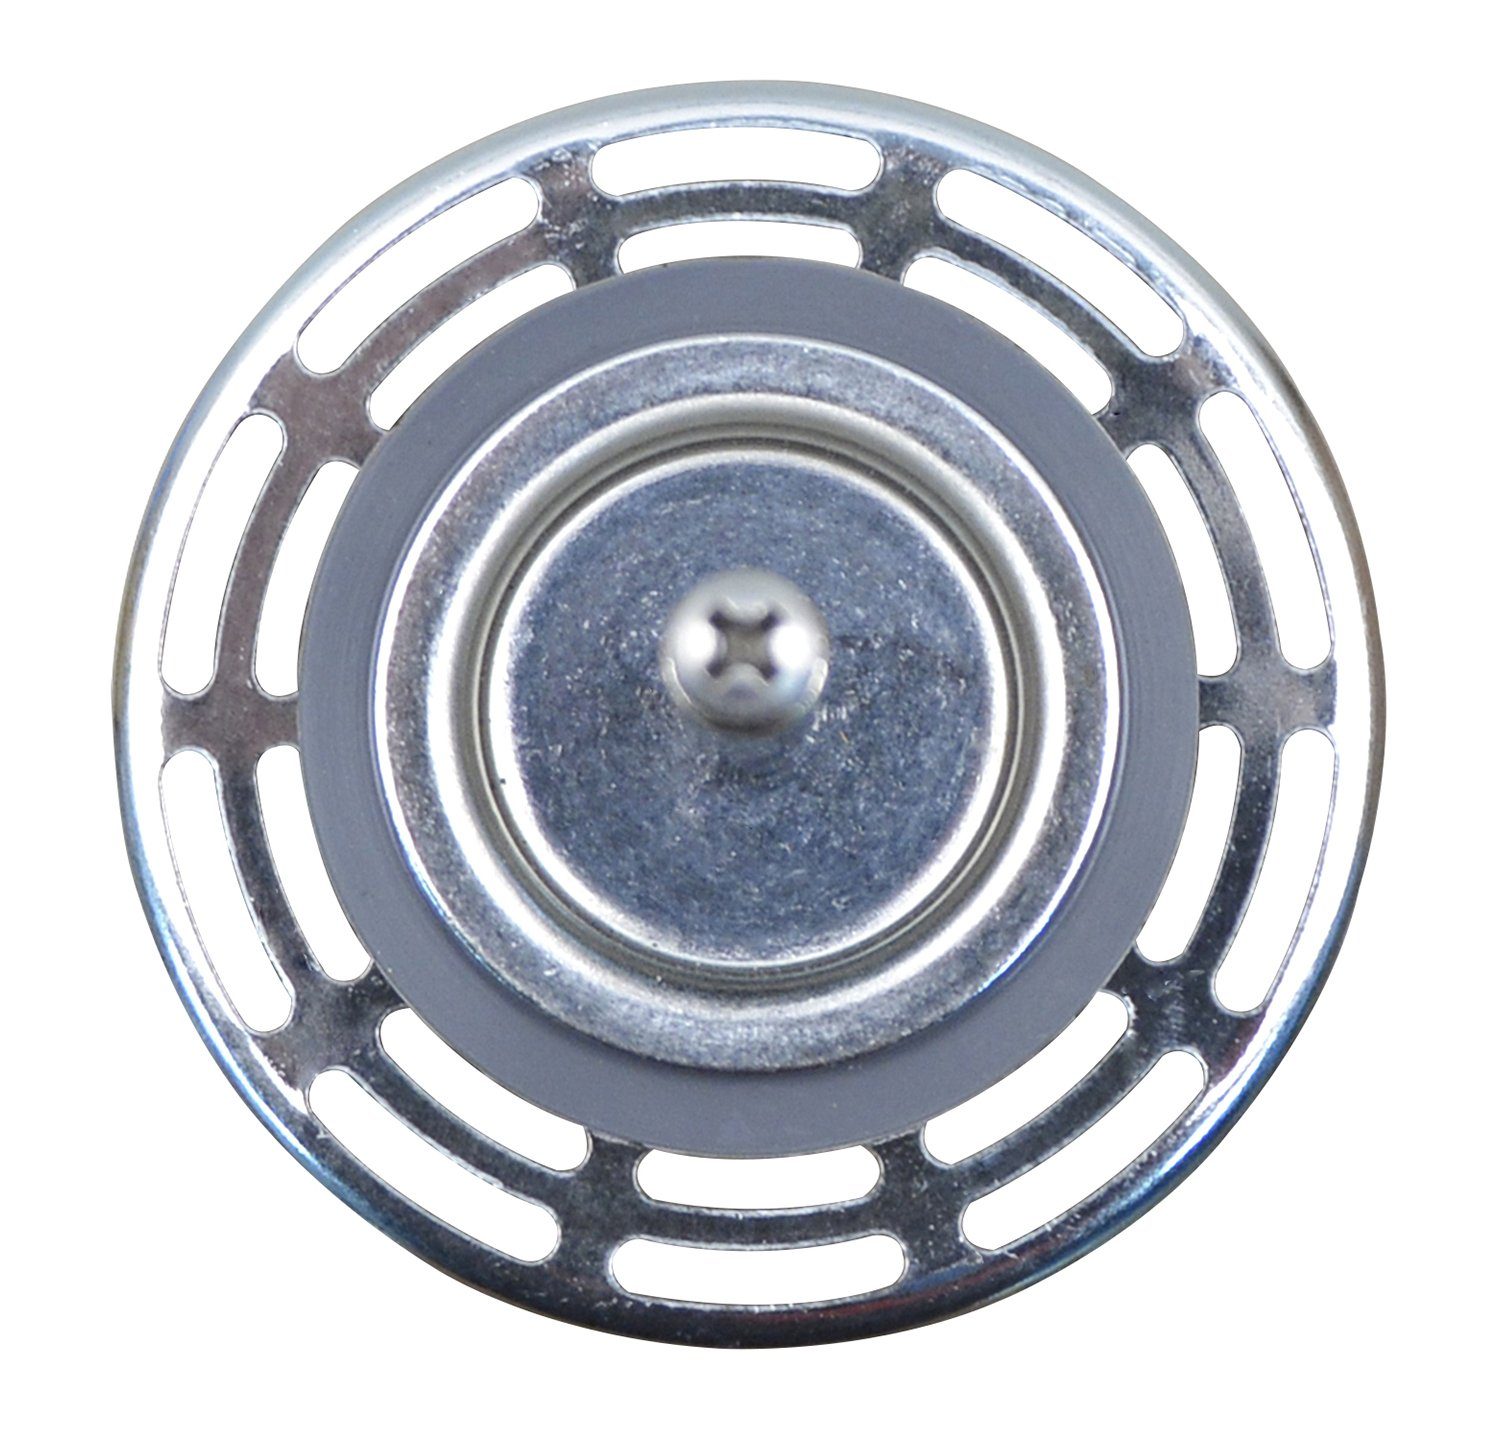 Exzenterbedienung Abfluss-Siebkörbchen 119145, Kunststoff, Zoll Siebkorb 3,5 für mit 20 Spülbecken Blanco Metall / Ablaufschlitzen